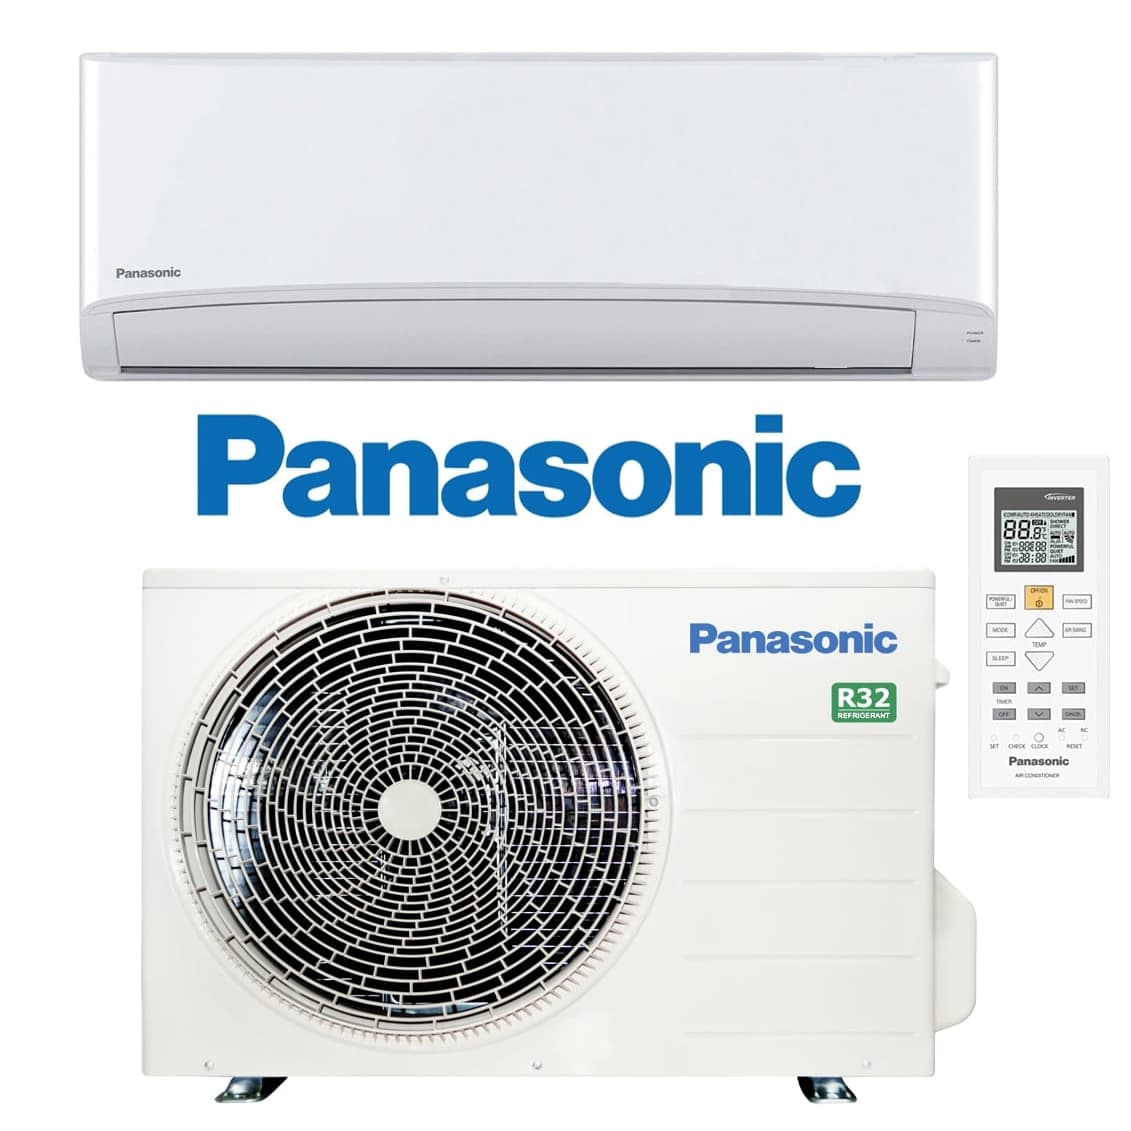 SAT Panasonic aire acondicionado en Barcelona